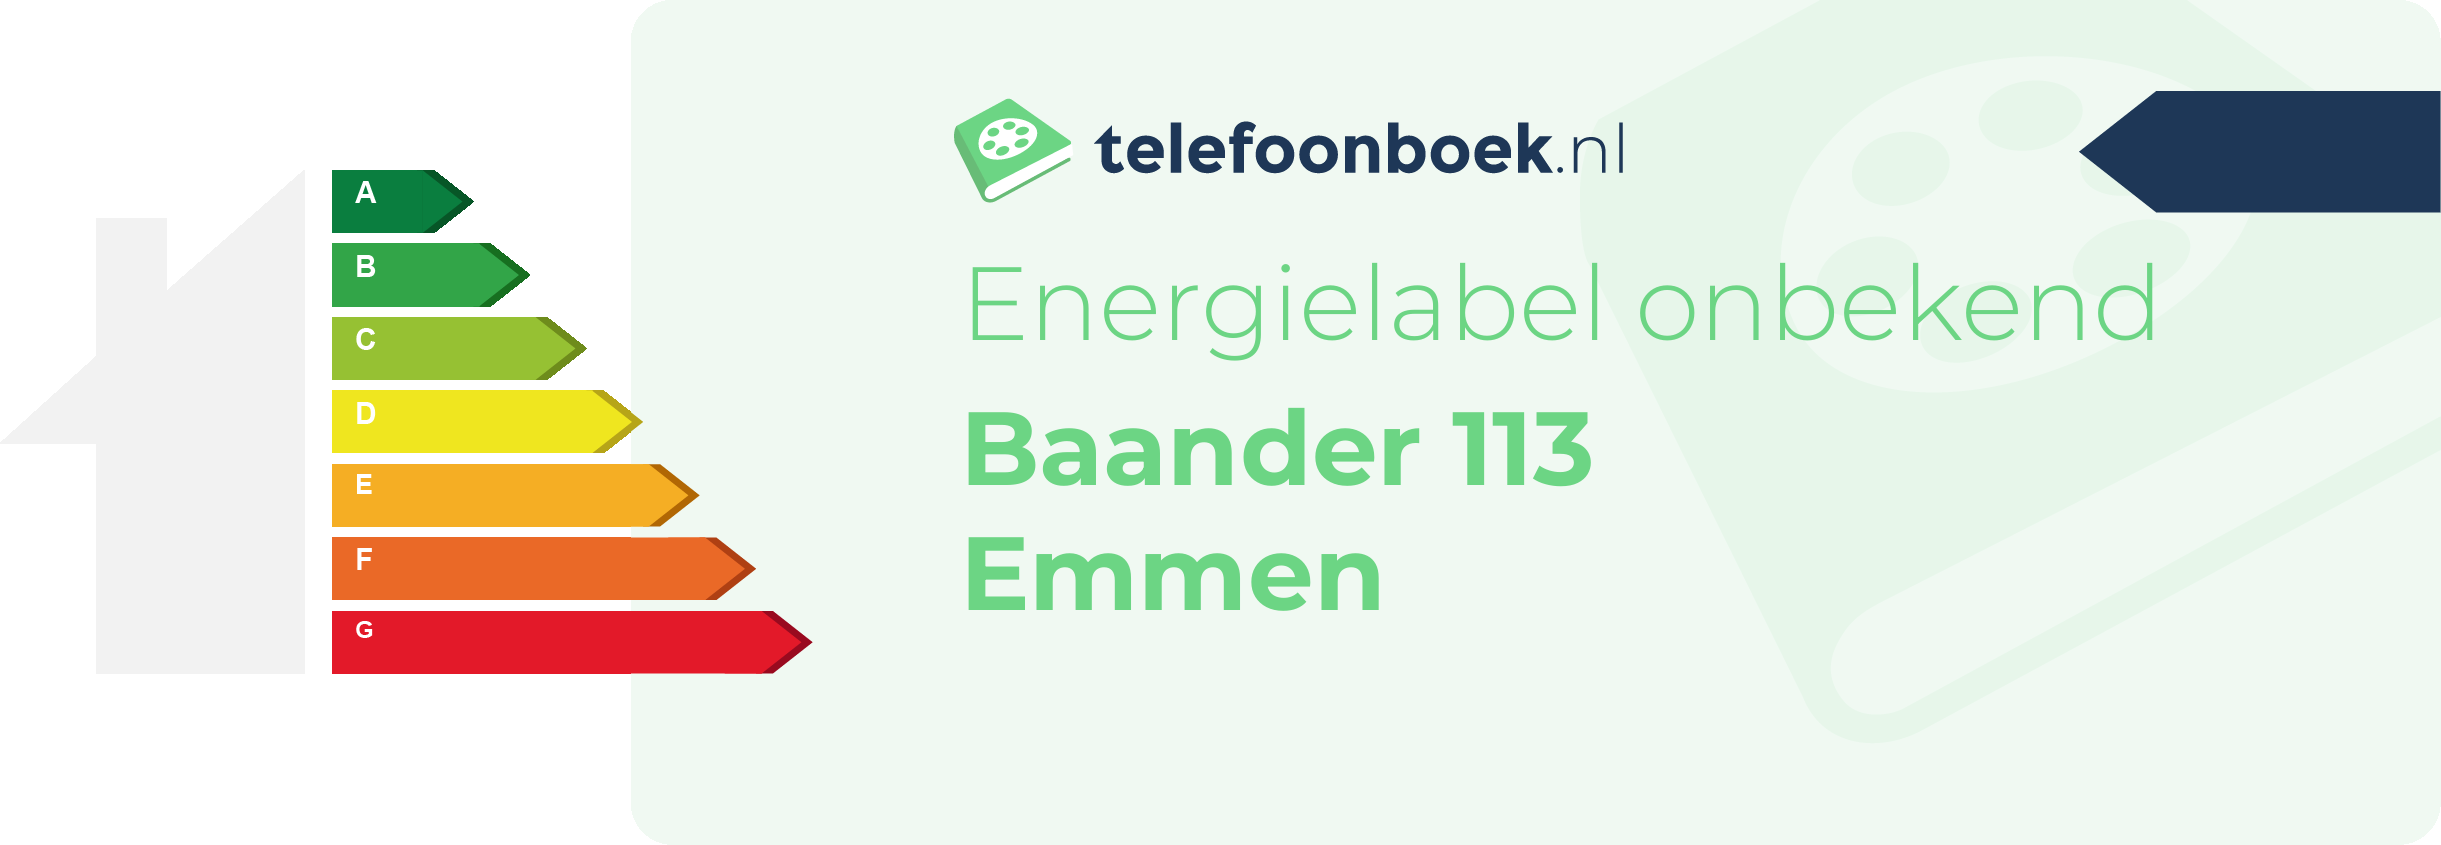 Energielabel Baander 113 Emmen